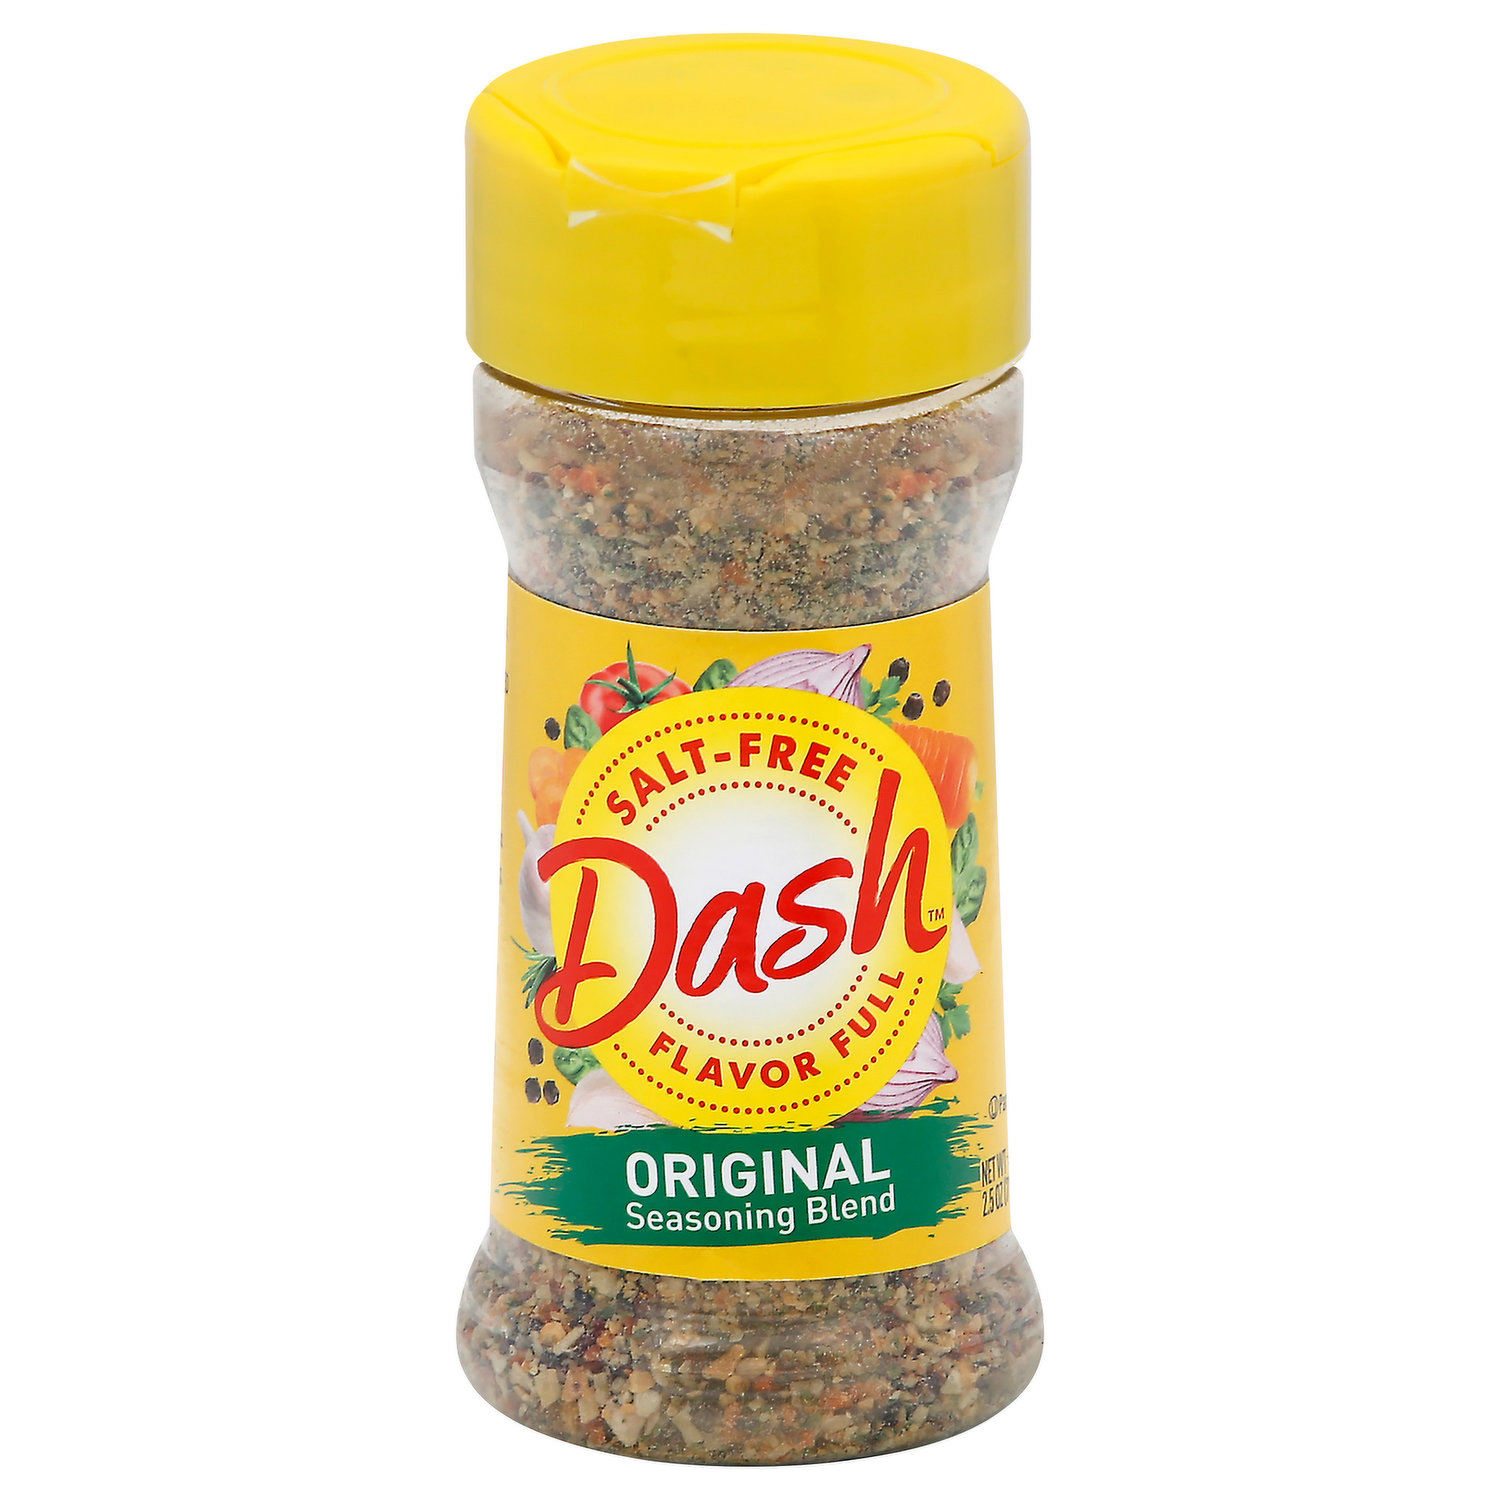 Dash Salt-Free Original Chicken Grilling Blend, 2.4 oz